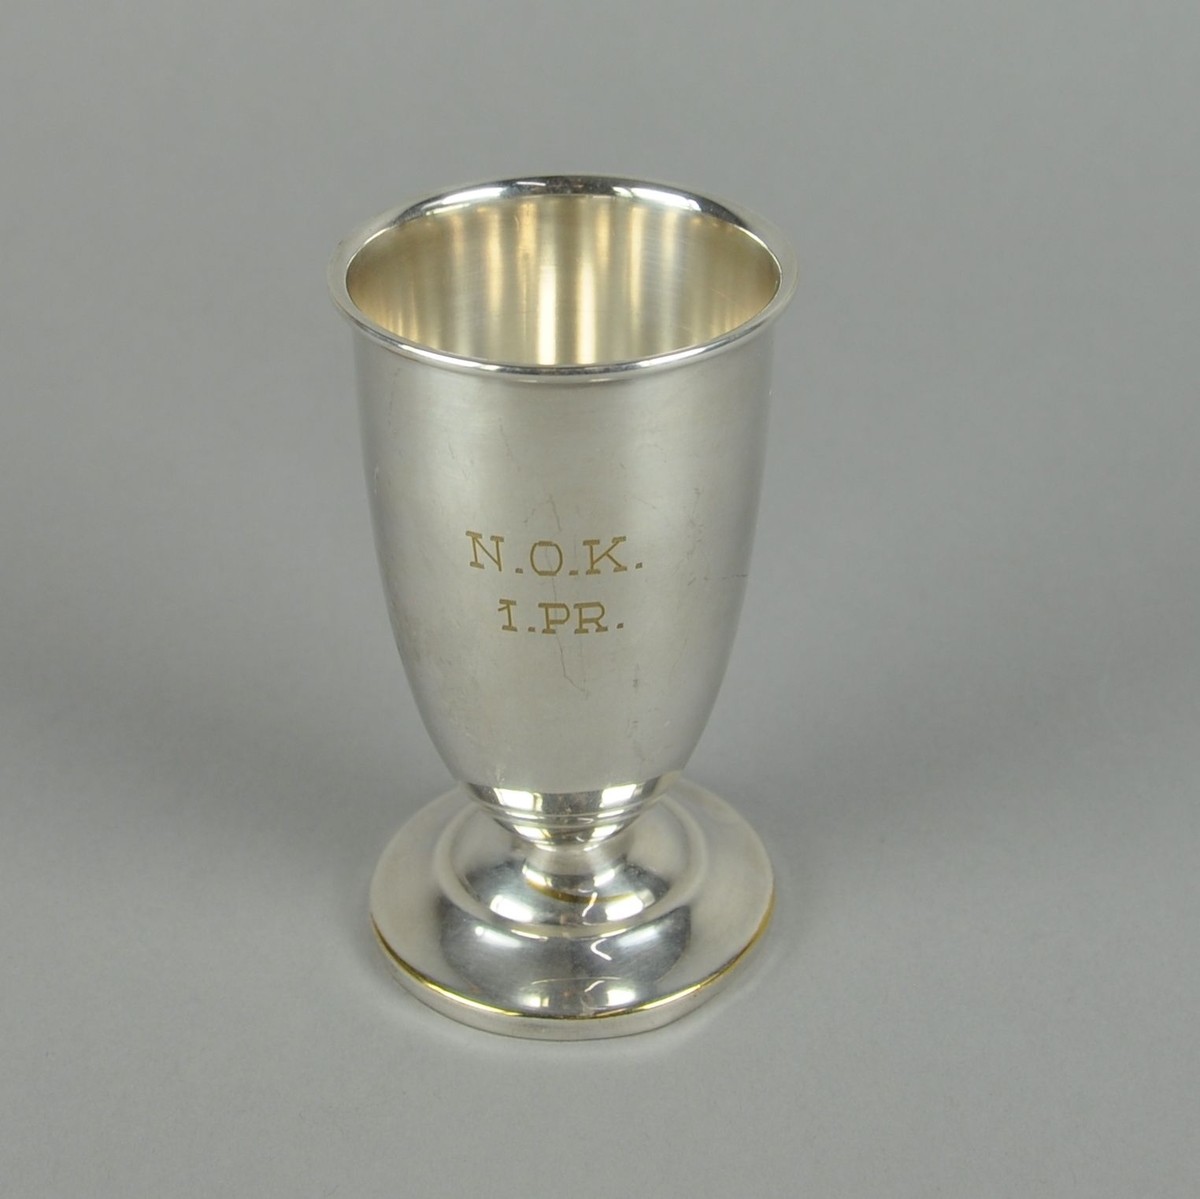 Pokal av metall, muligens sølvplett. Sylindrisk form med innsnevring nederst mot utgående sokkel. Pokalen har profilert dekor på sokkel.